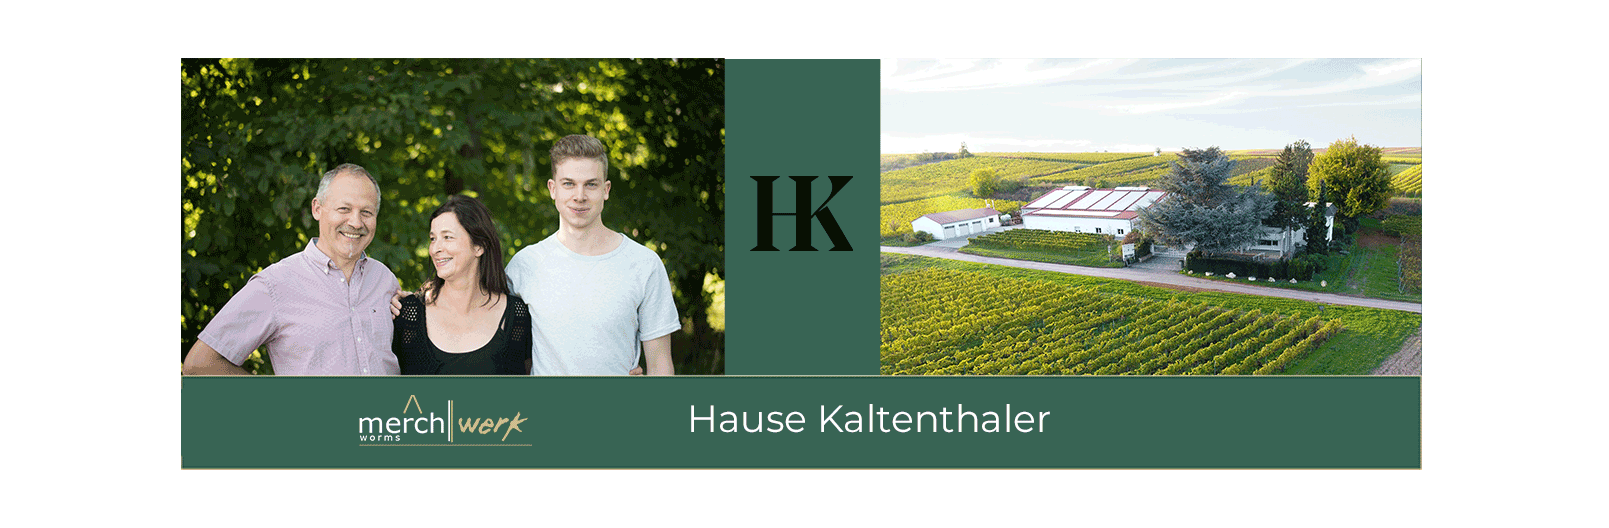 Hause Kaltenthaler. Familienbetrieb in der 3. Generation 